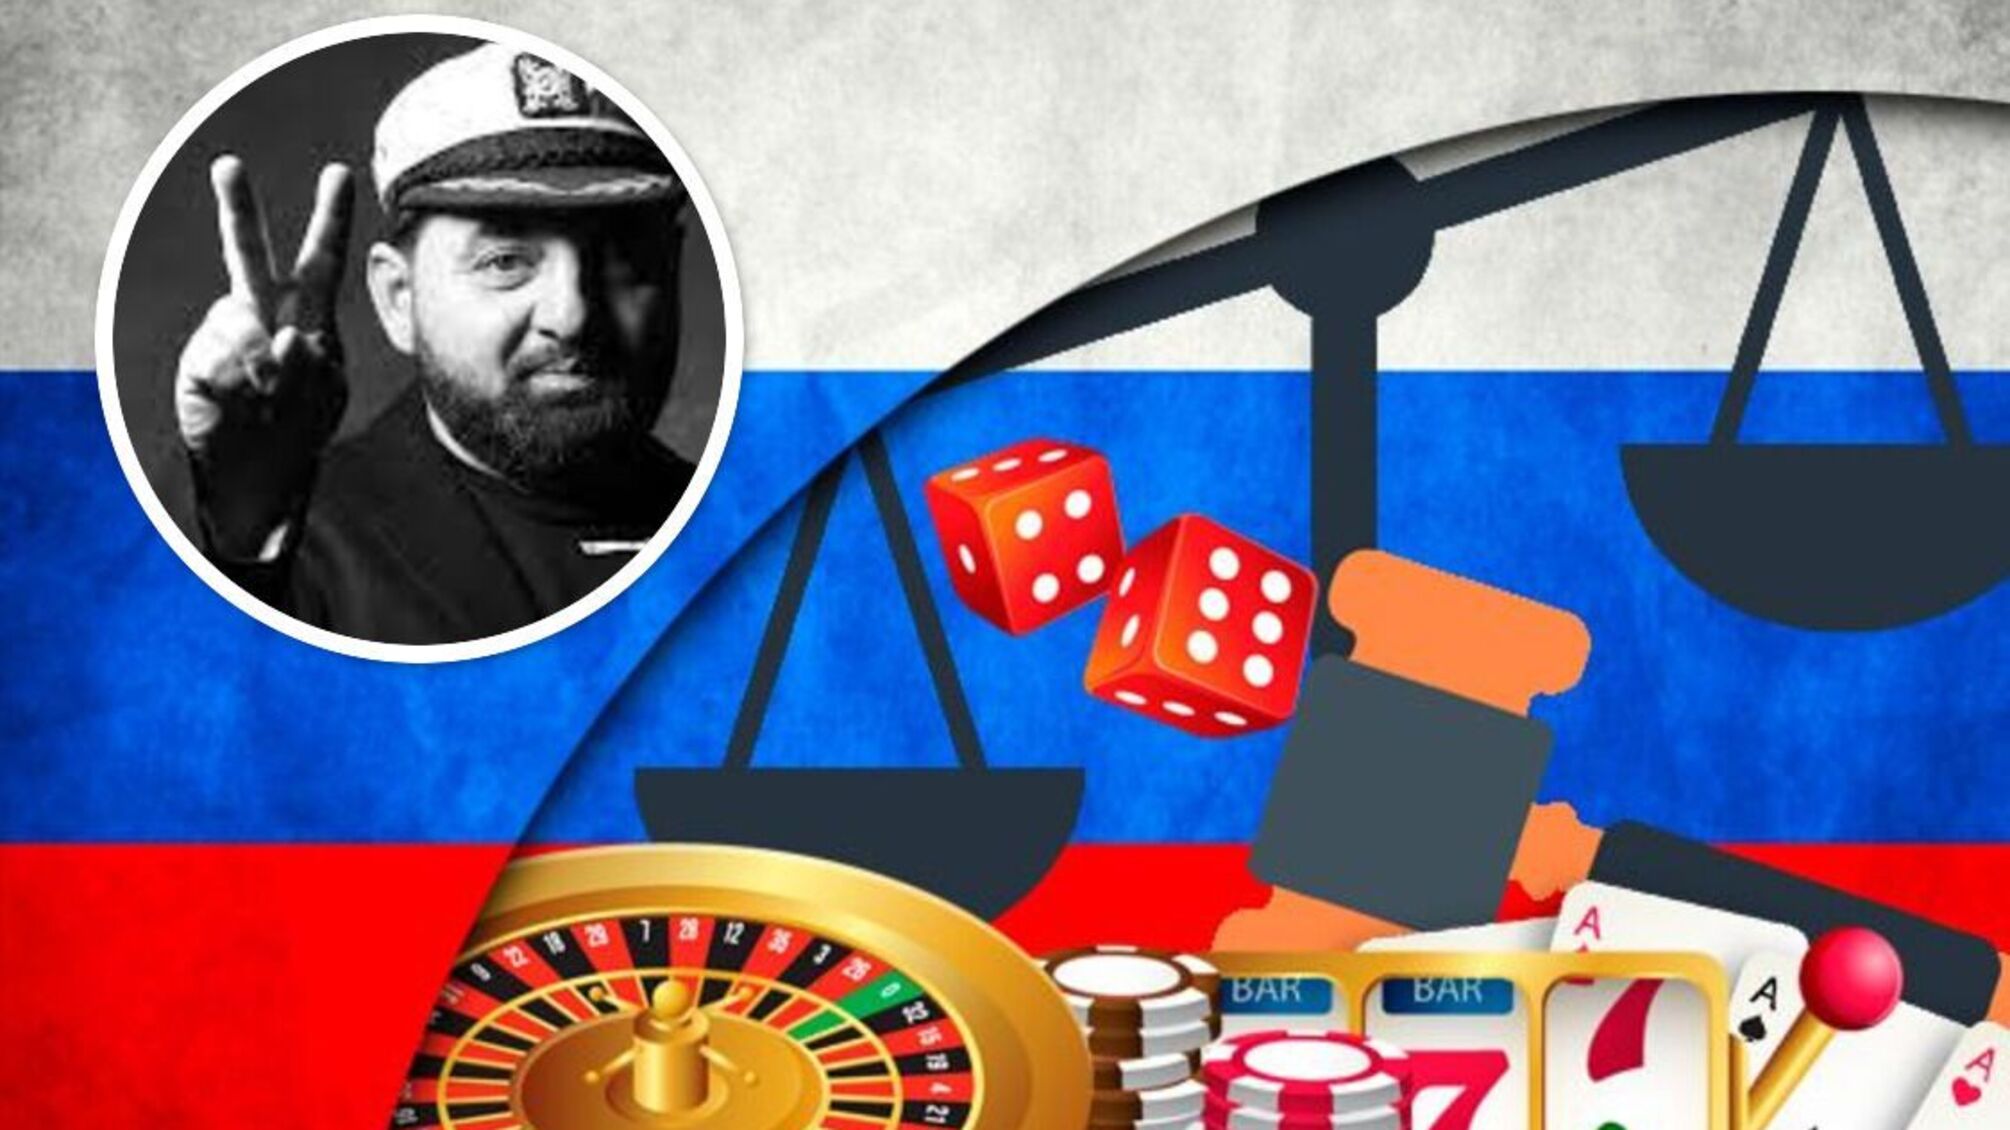 Футбольная монополия, криминал и российские 'следы': игральная империя VBet скрывает связи с государством-агрессором?